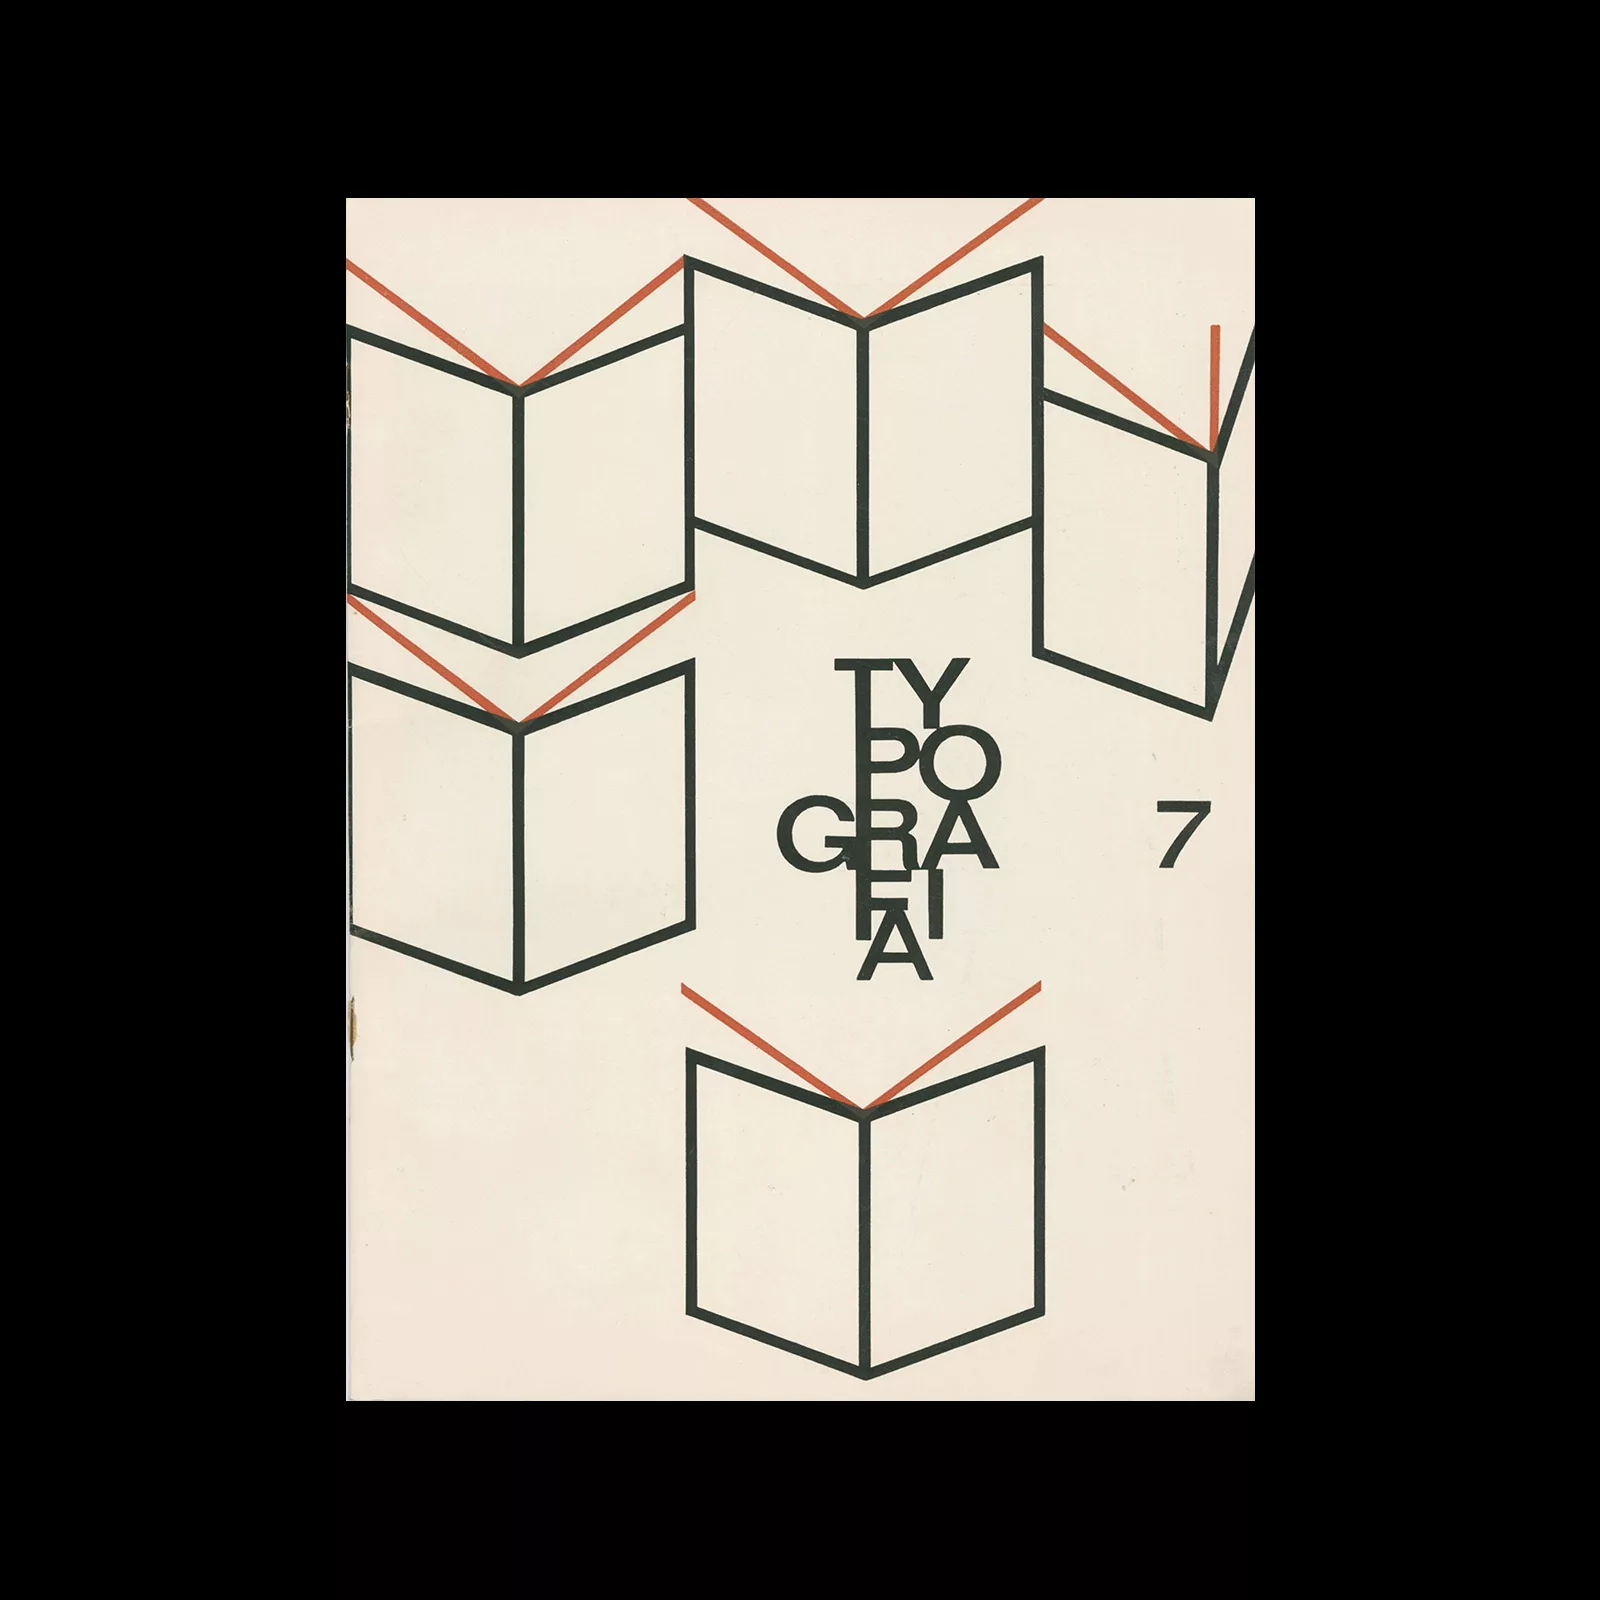 Typografia, ročník 67, 07, 1964